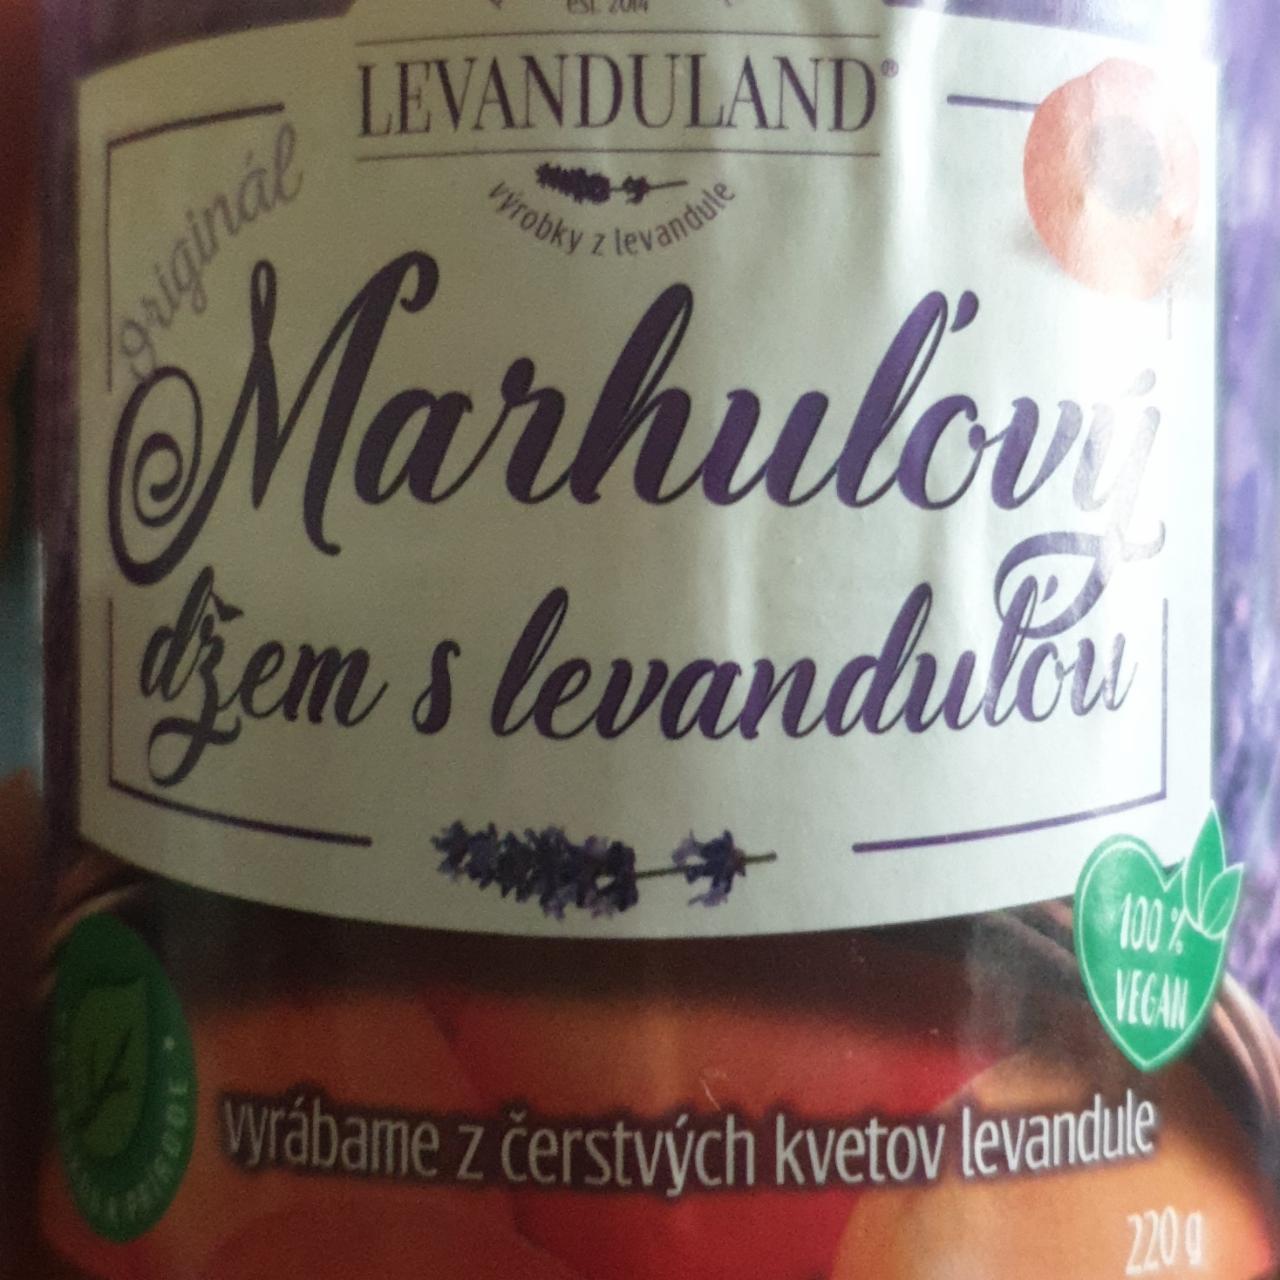 Fotografie - Marhuľový džem s levanduľou Levanduland